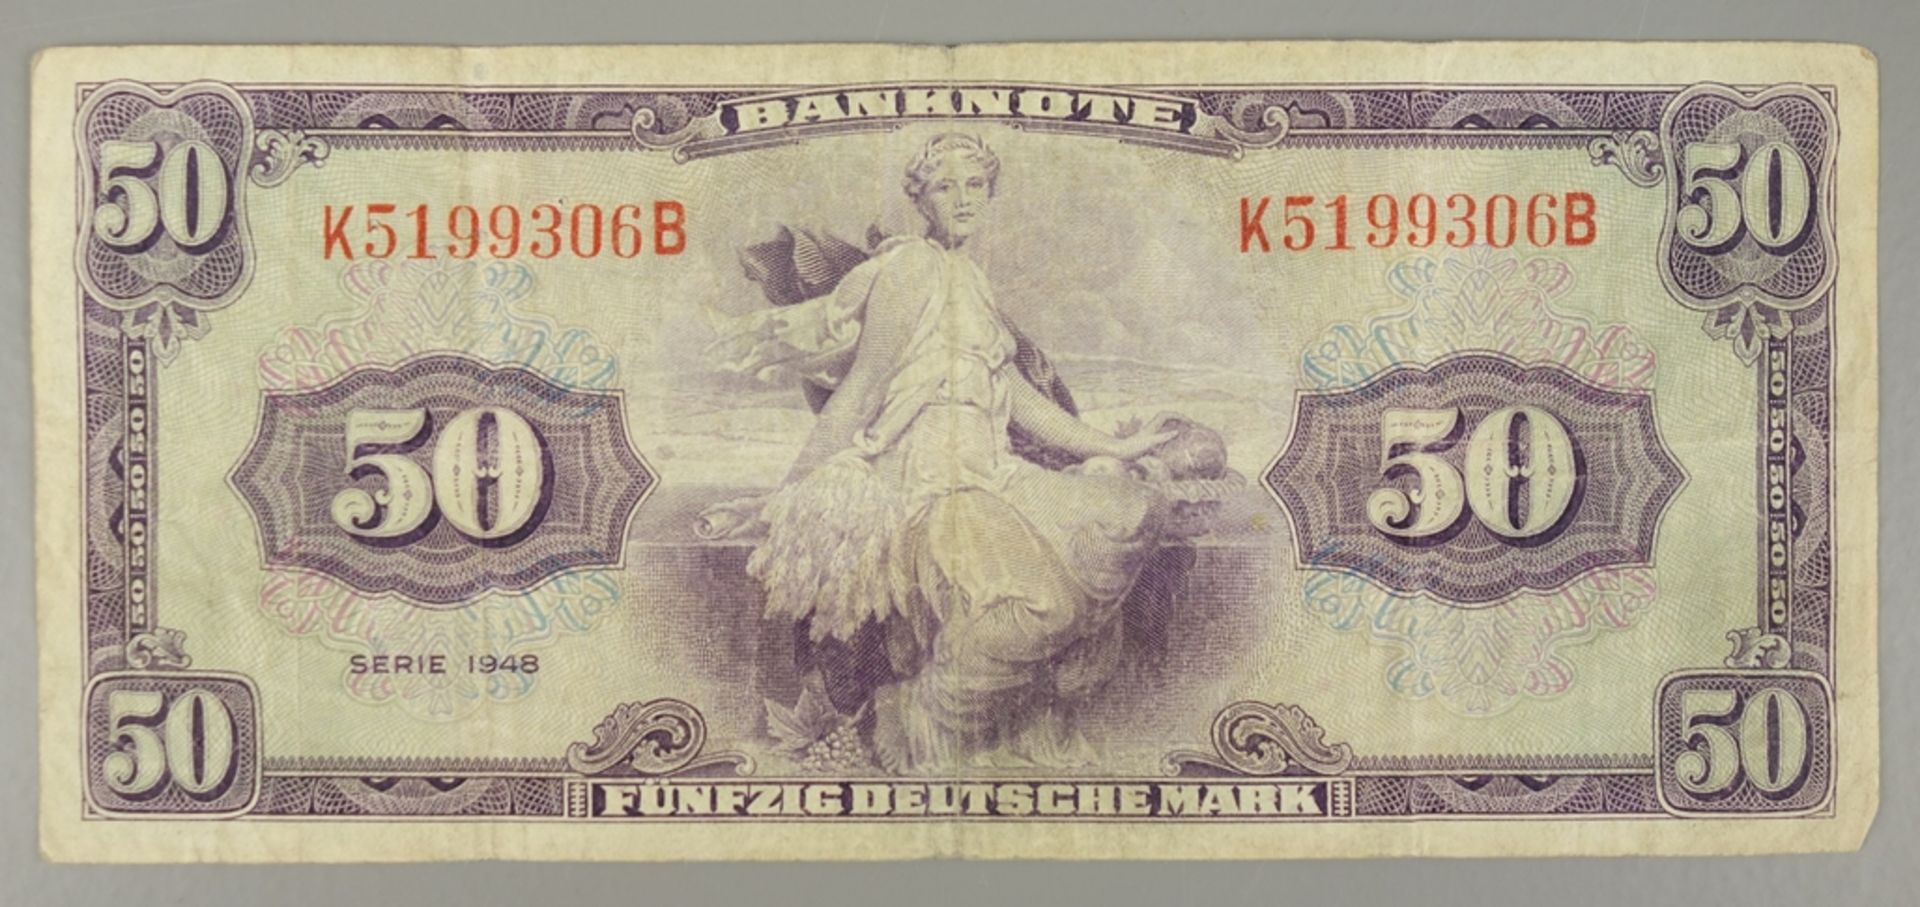 Behelfsgeld - Banknote, 50 Deutsche Mark, 1948 - Bild 2 aus 2